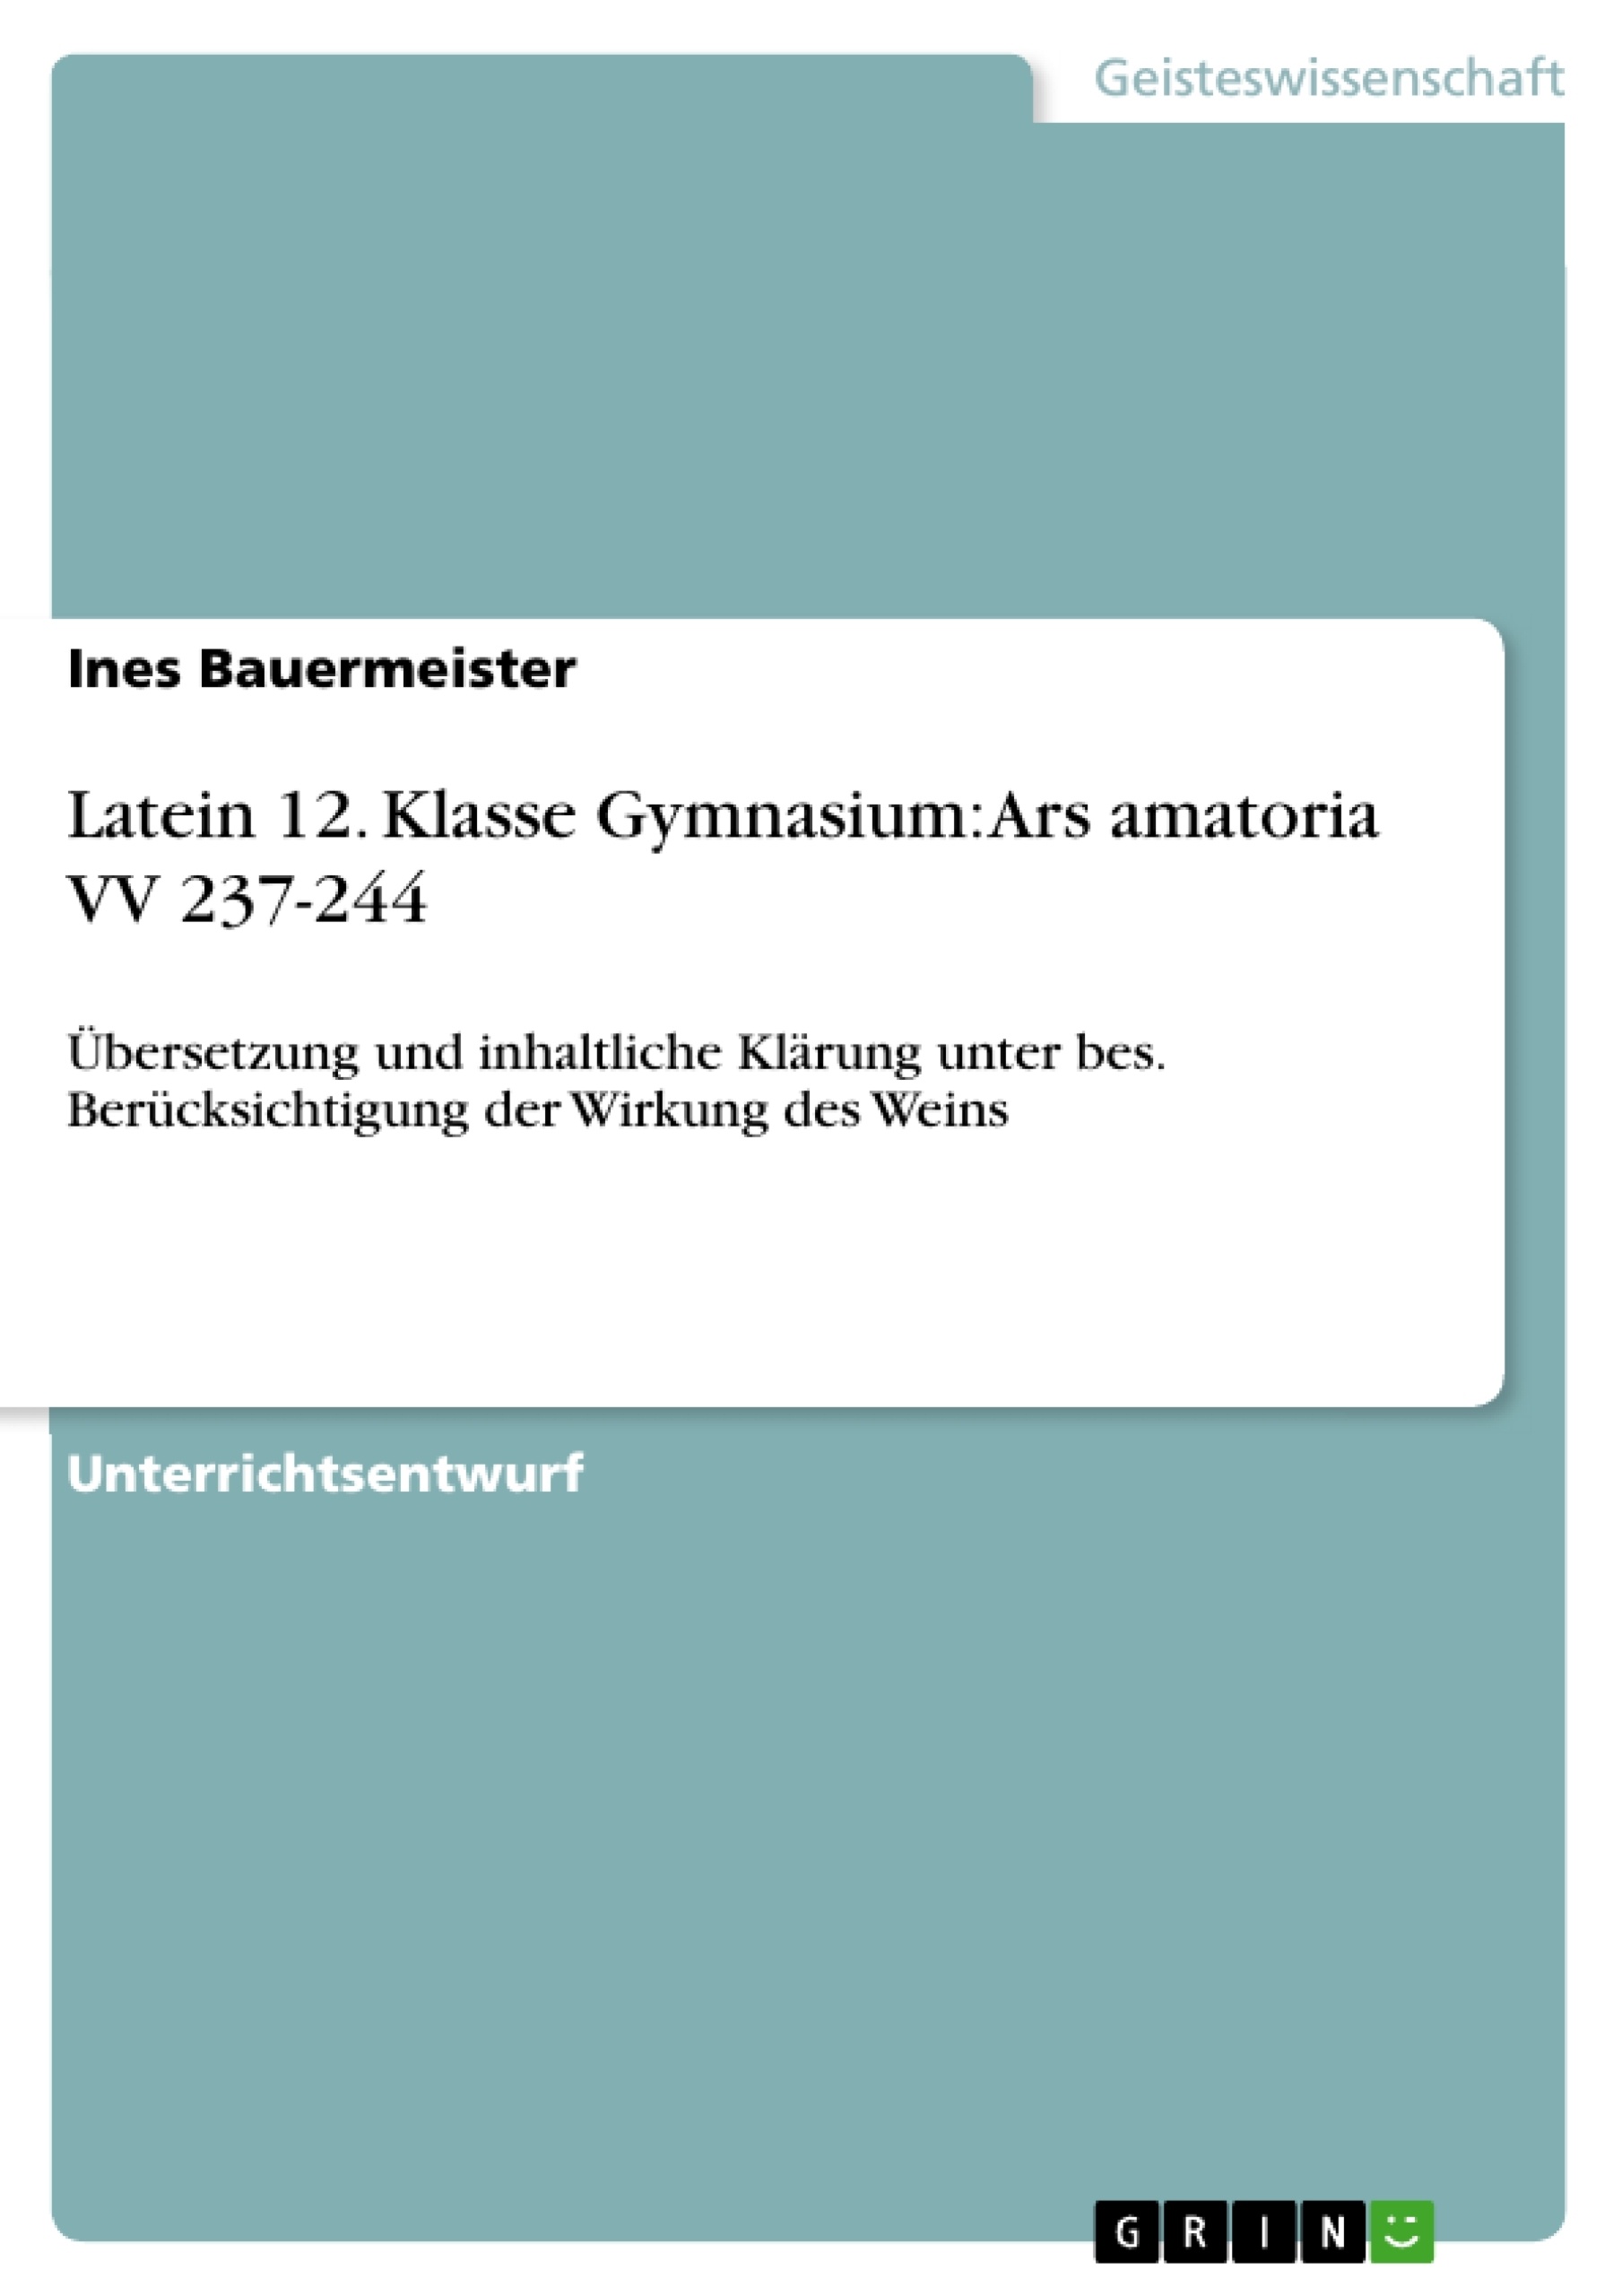 Title: Latein 12. Klasse Gymnasium: Ars amatoria VV 237-244